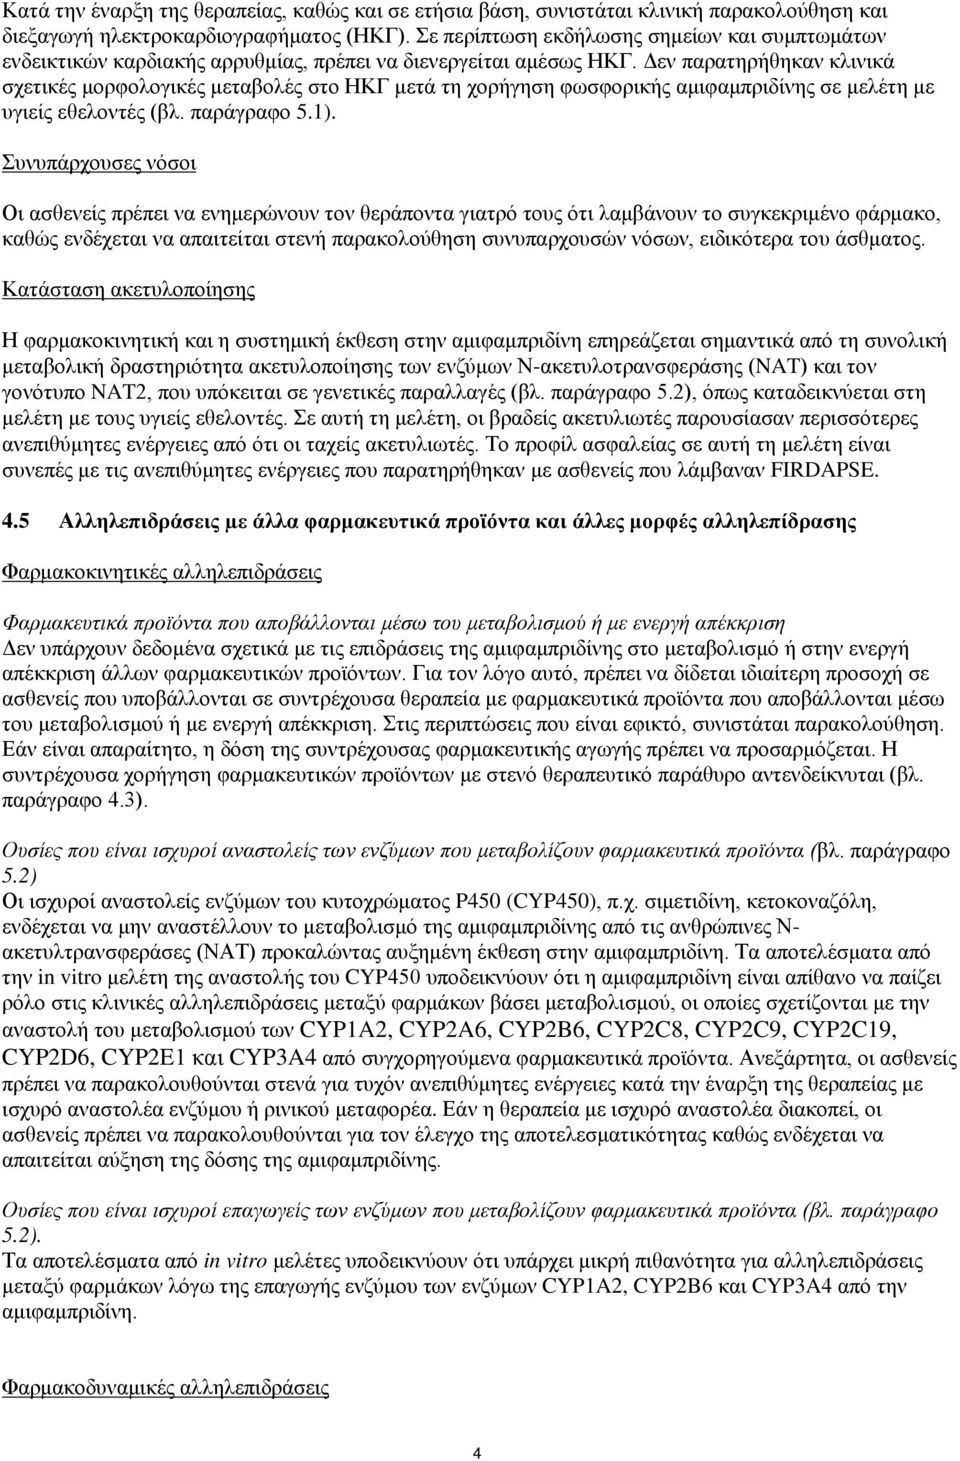 Δεν παρατηρήθηκαν κλινικά σχετικές μορφολογικές μεταβολές στο ΗΚΓ μετά τη χορήγηση φωσφορικής αμιφαμπριδίνης σε μελέτη με υγιείς εθελοντές (βλ. παράγραφο 5.1).